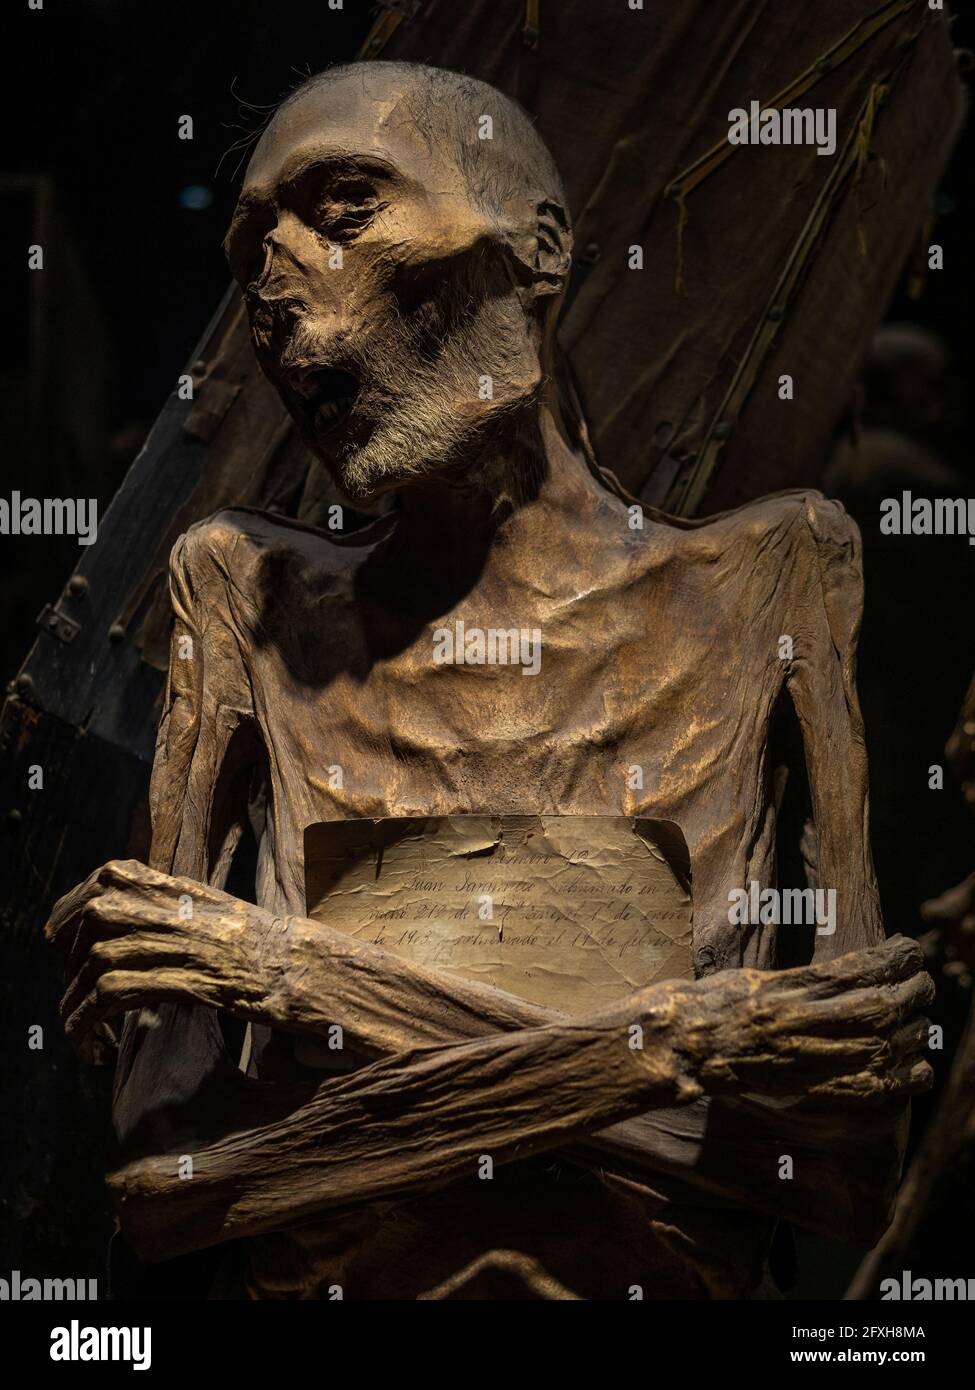 Corpo mummificato al Museo delle Mummie di Guanajuato, la più grande collezione di mummie naturali del mondo, nella città di Guanajuato, Messico. Foto Stock